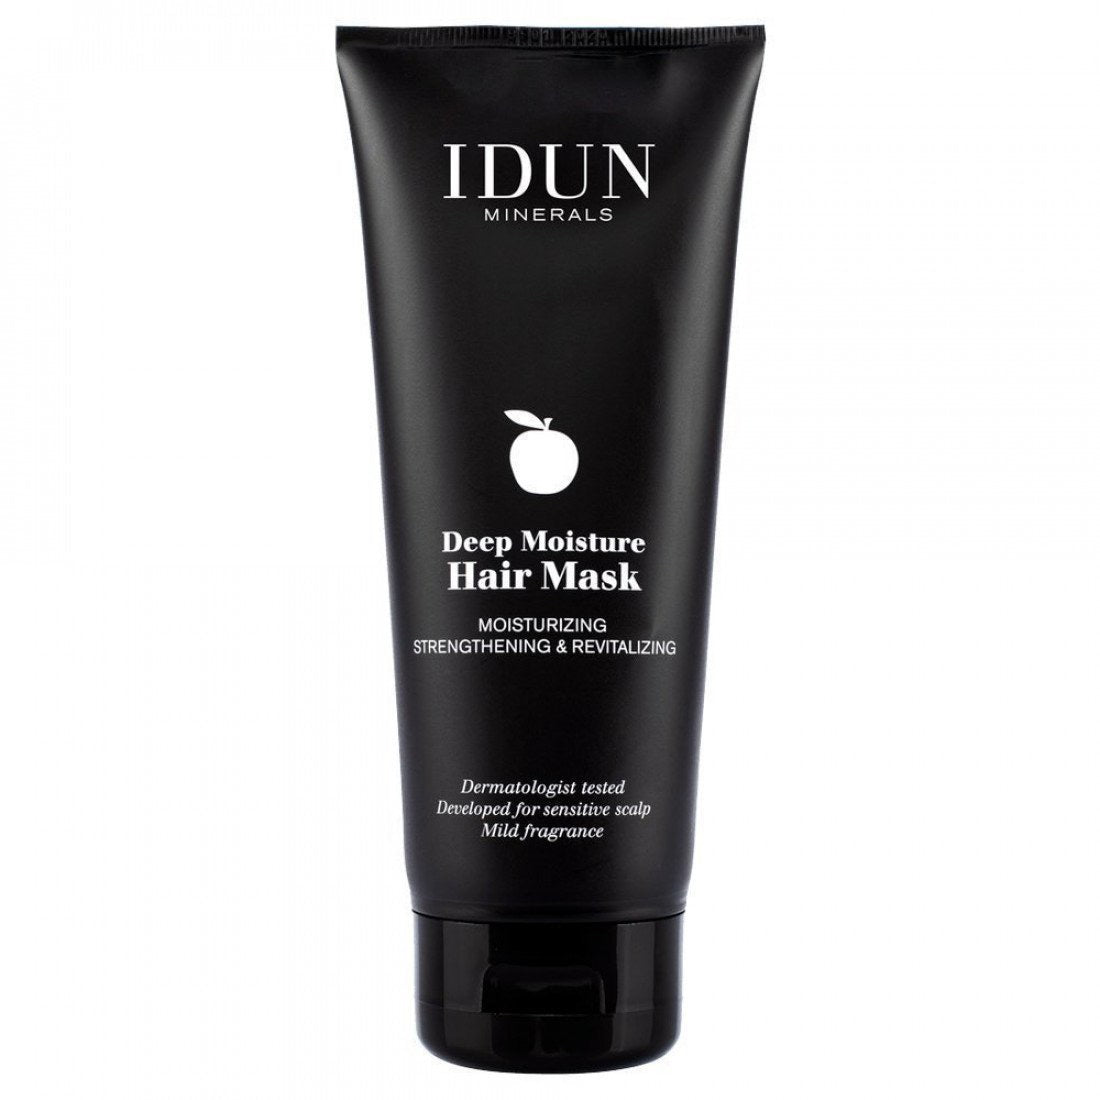 IDUN Minerals - Deep Moisture Hair Mask - MATCHA & MASCARA